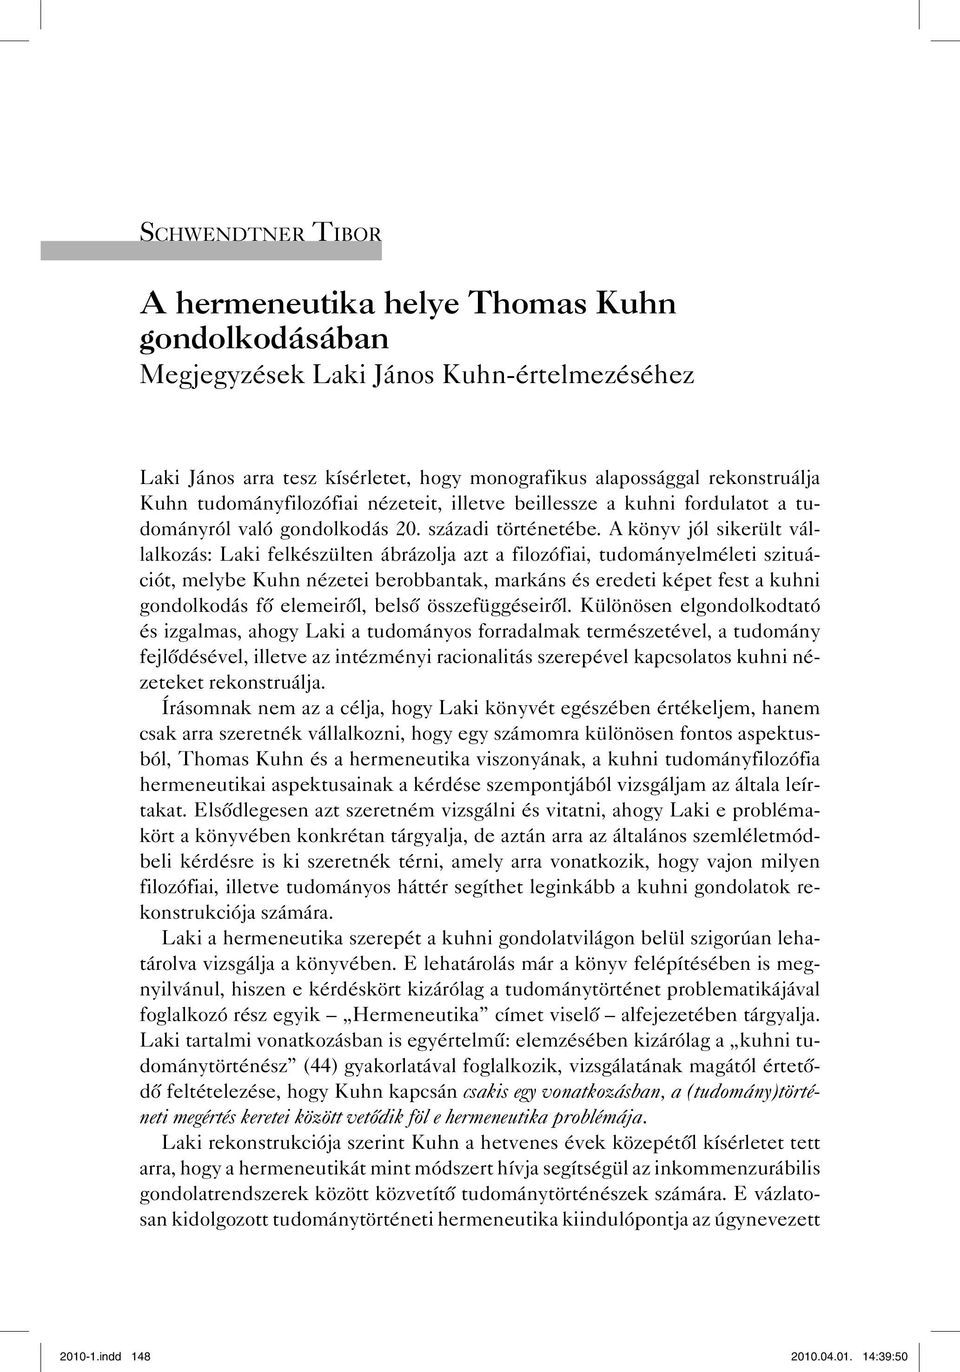 A könyv jól sikerült vállalkozás: Laki felkészülten ábrázolja azt a filozófiai, tudományelméleti szituációt, melybe Kuhn nézetei berobbantak, markáns és eredeti képet fest a kuhni gondolkodás fő